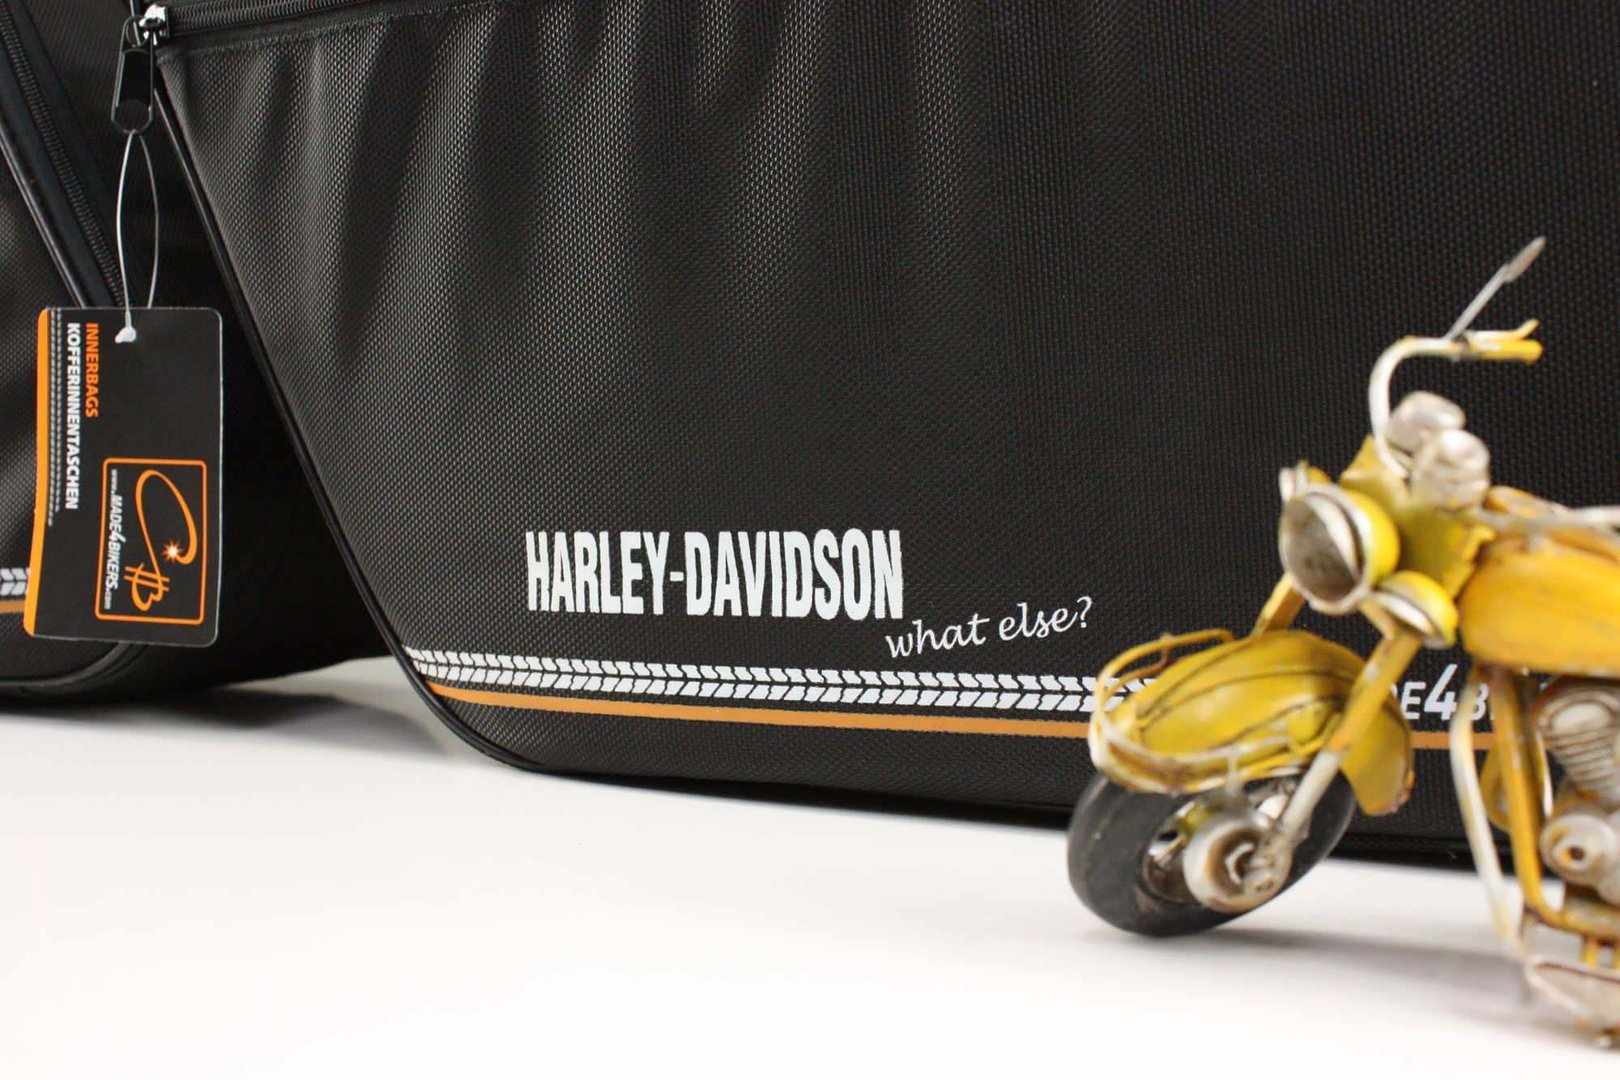 Ein Paar Koffer Innentaschen (Textil/Schwarz) f. LEDERKOFFER  PROMOTION BAG "Harley Davidson"